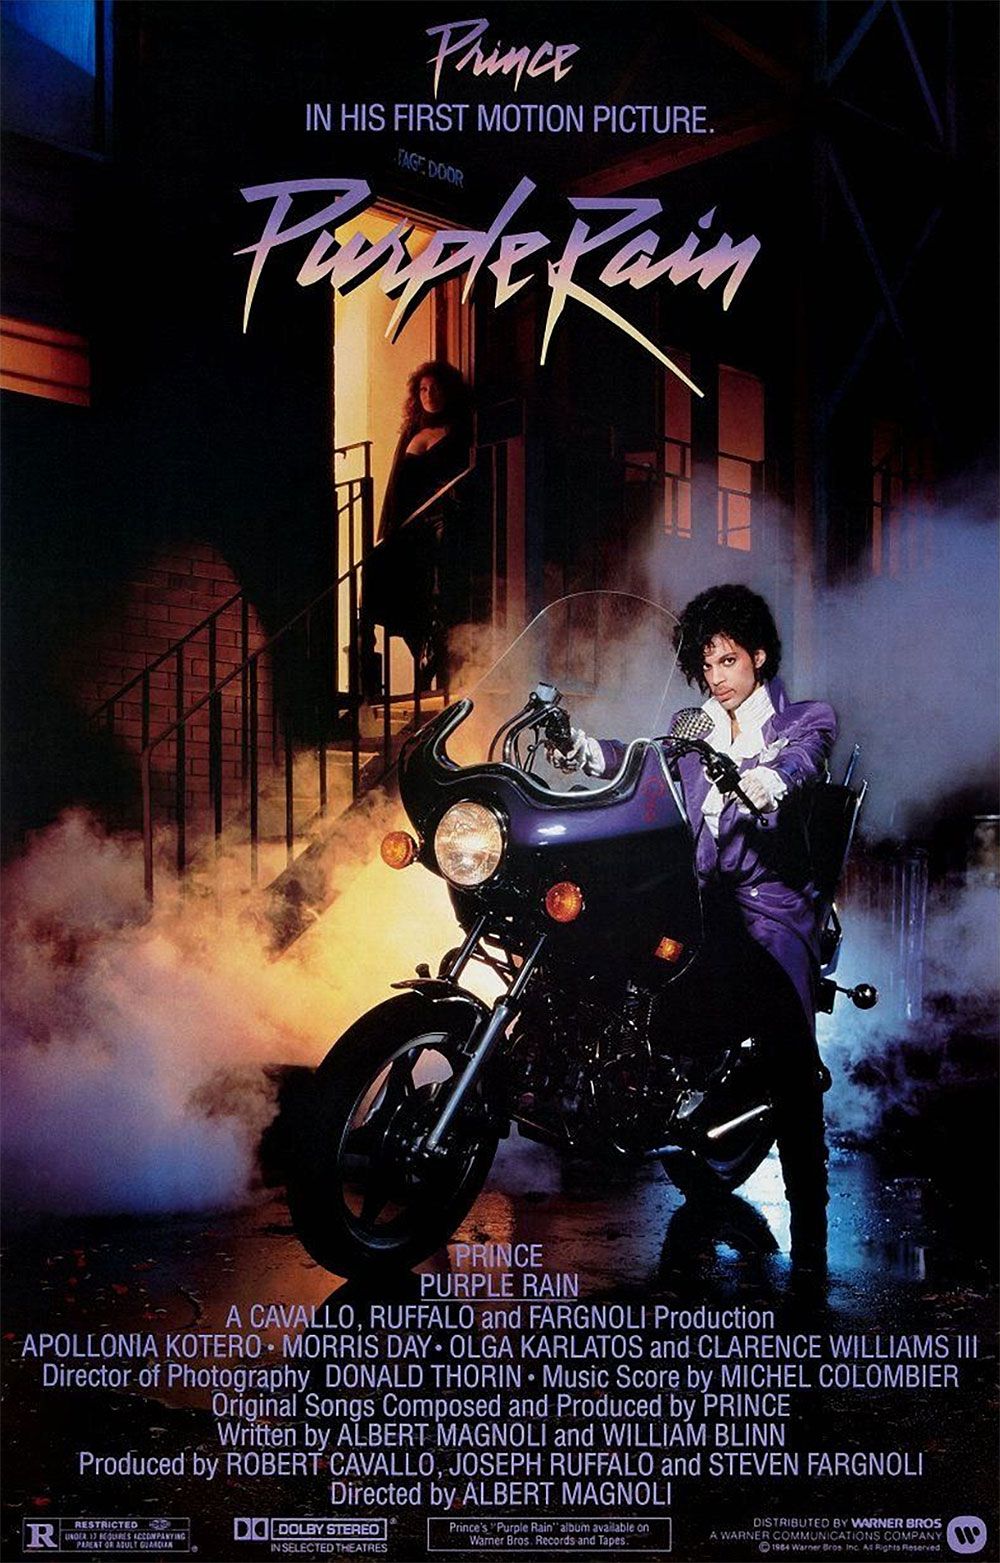 The original 1980s poster for Purple Rain